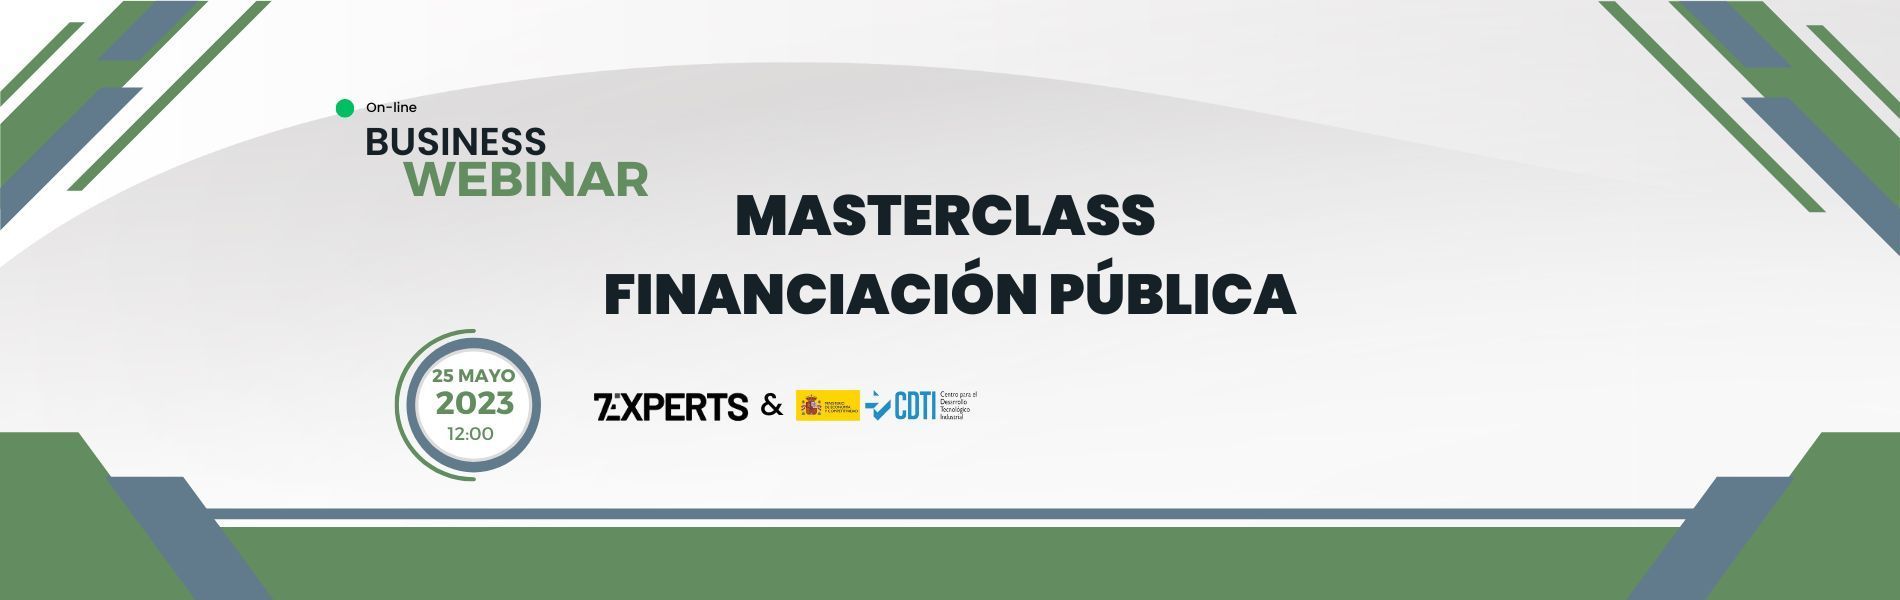 Webinar - Masterclass Financiación Publica